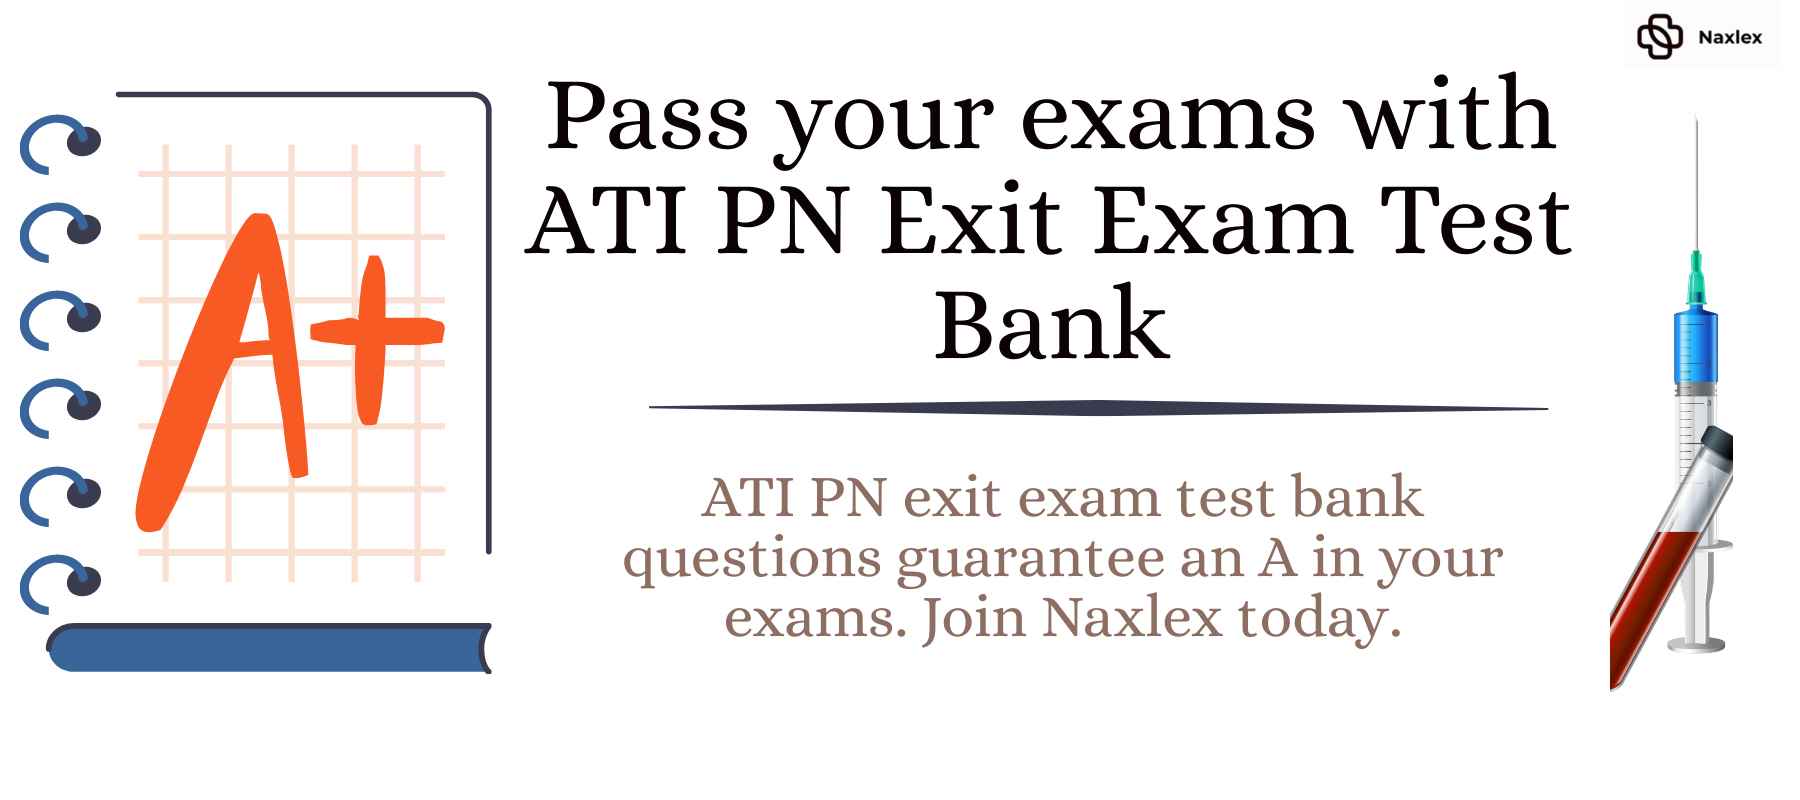 ATI PN Exit Exam Test Bank